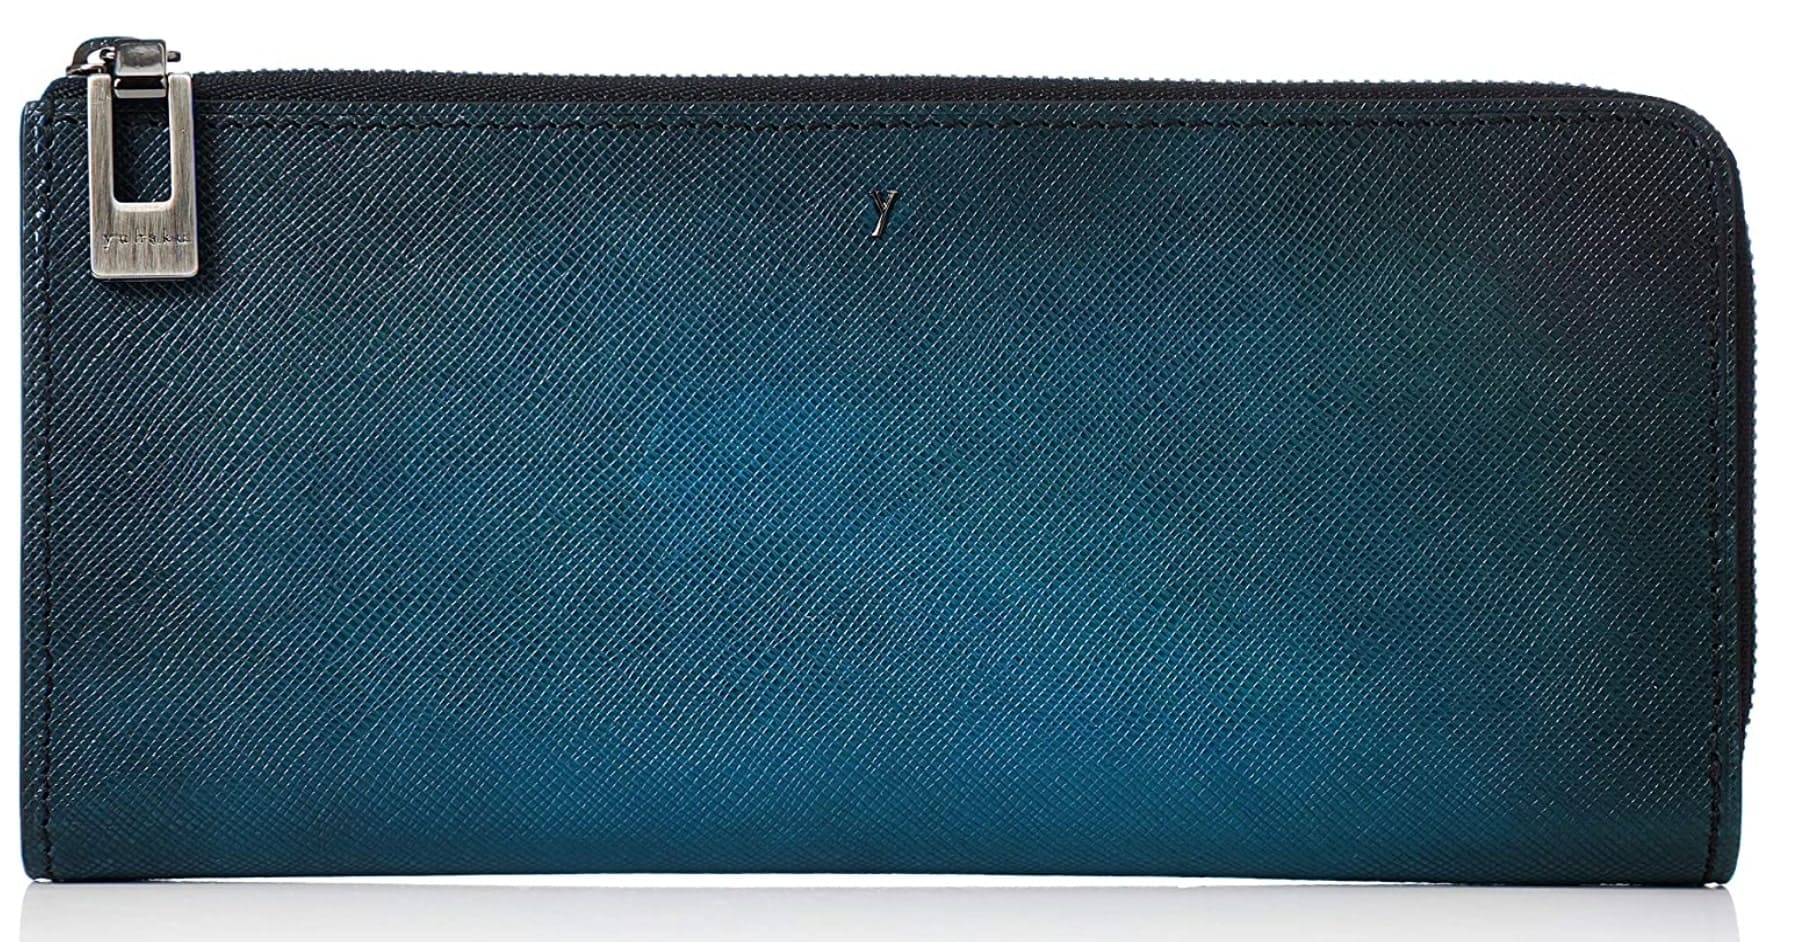 ユハクの世界一の手染めによる青色長財布